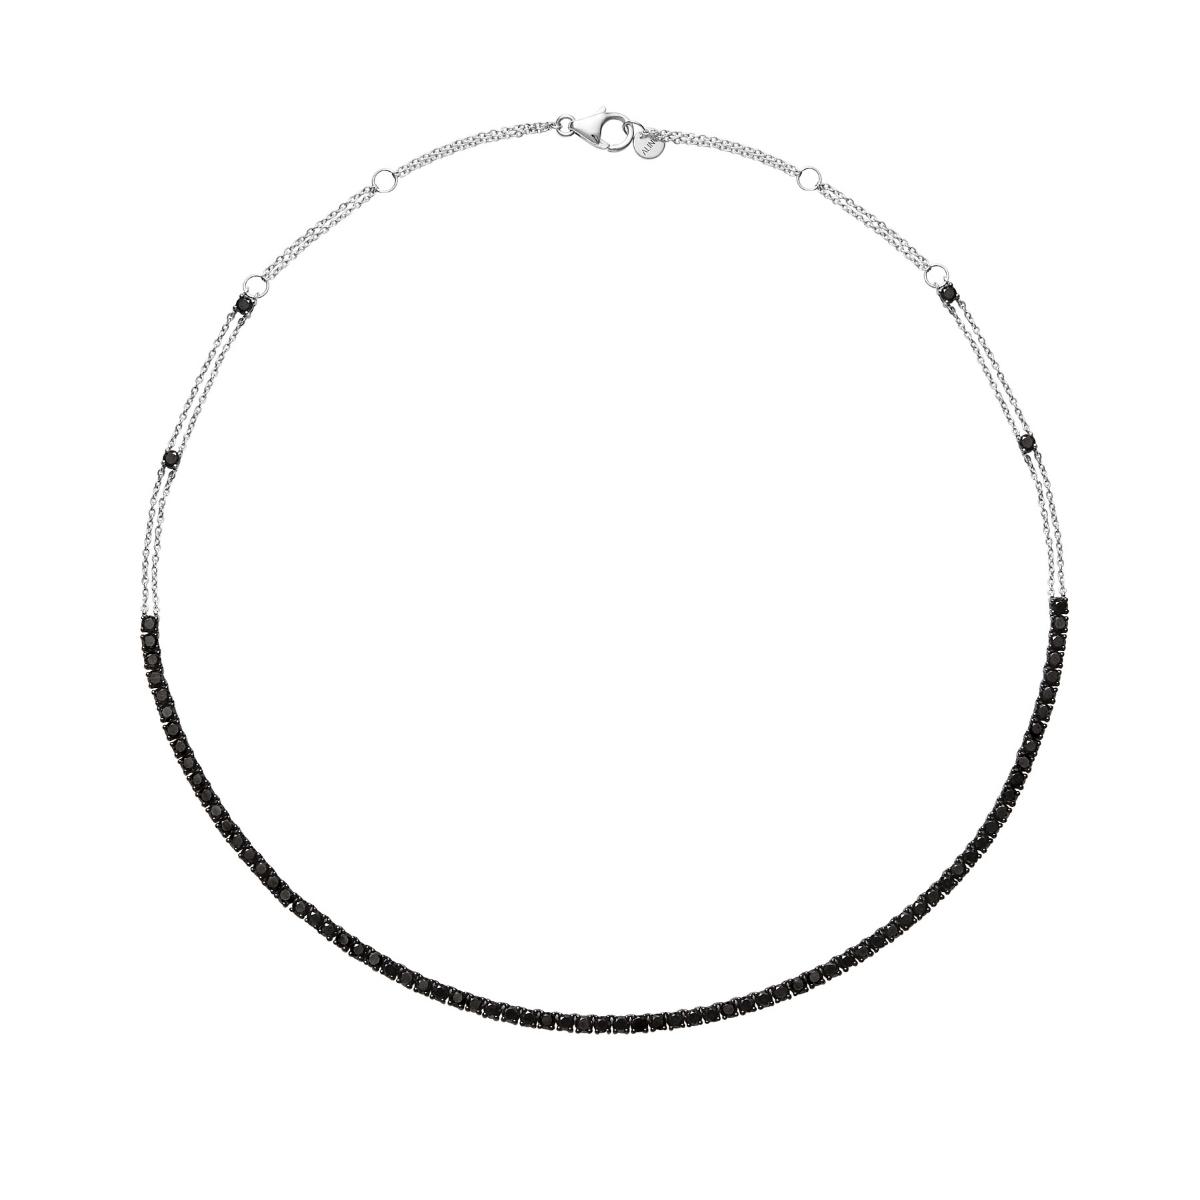 RIVIERA Black Diamond Necklace 5.5ct